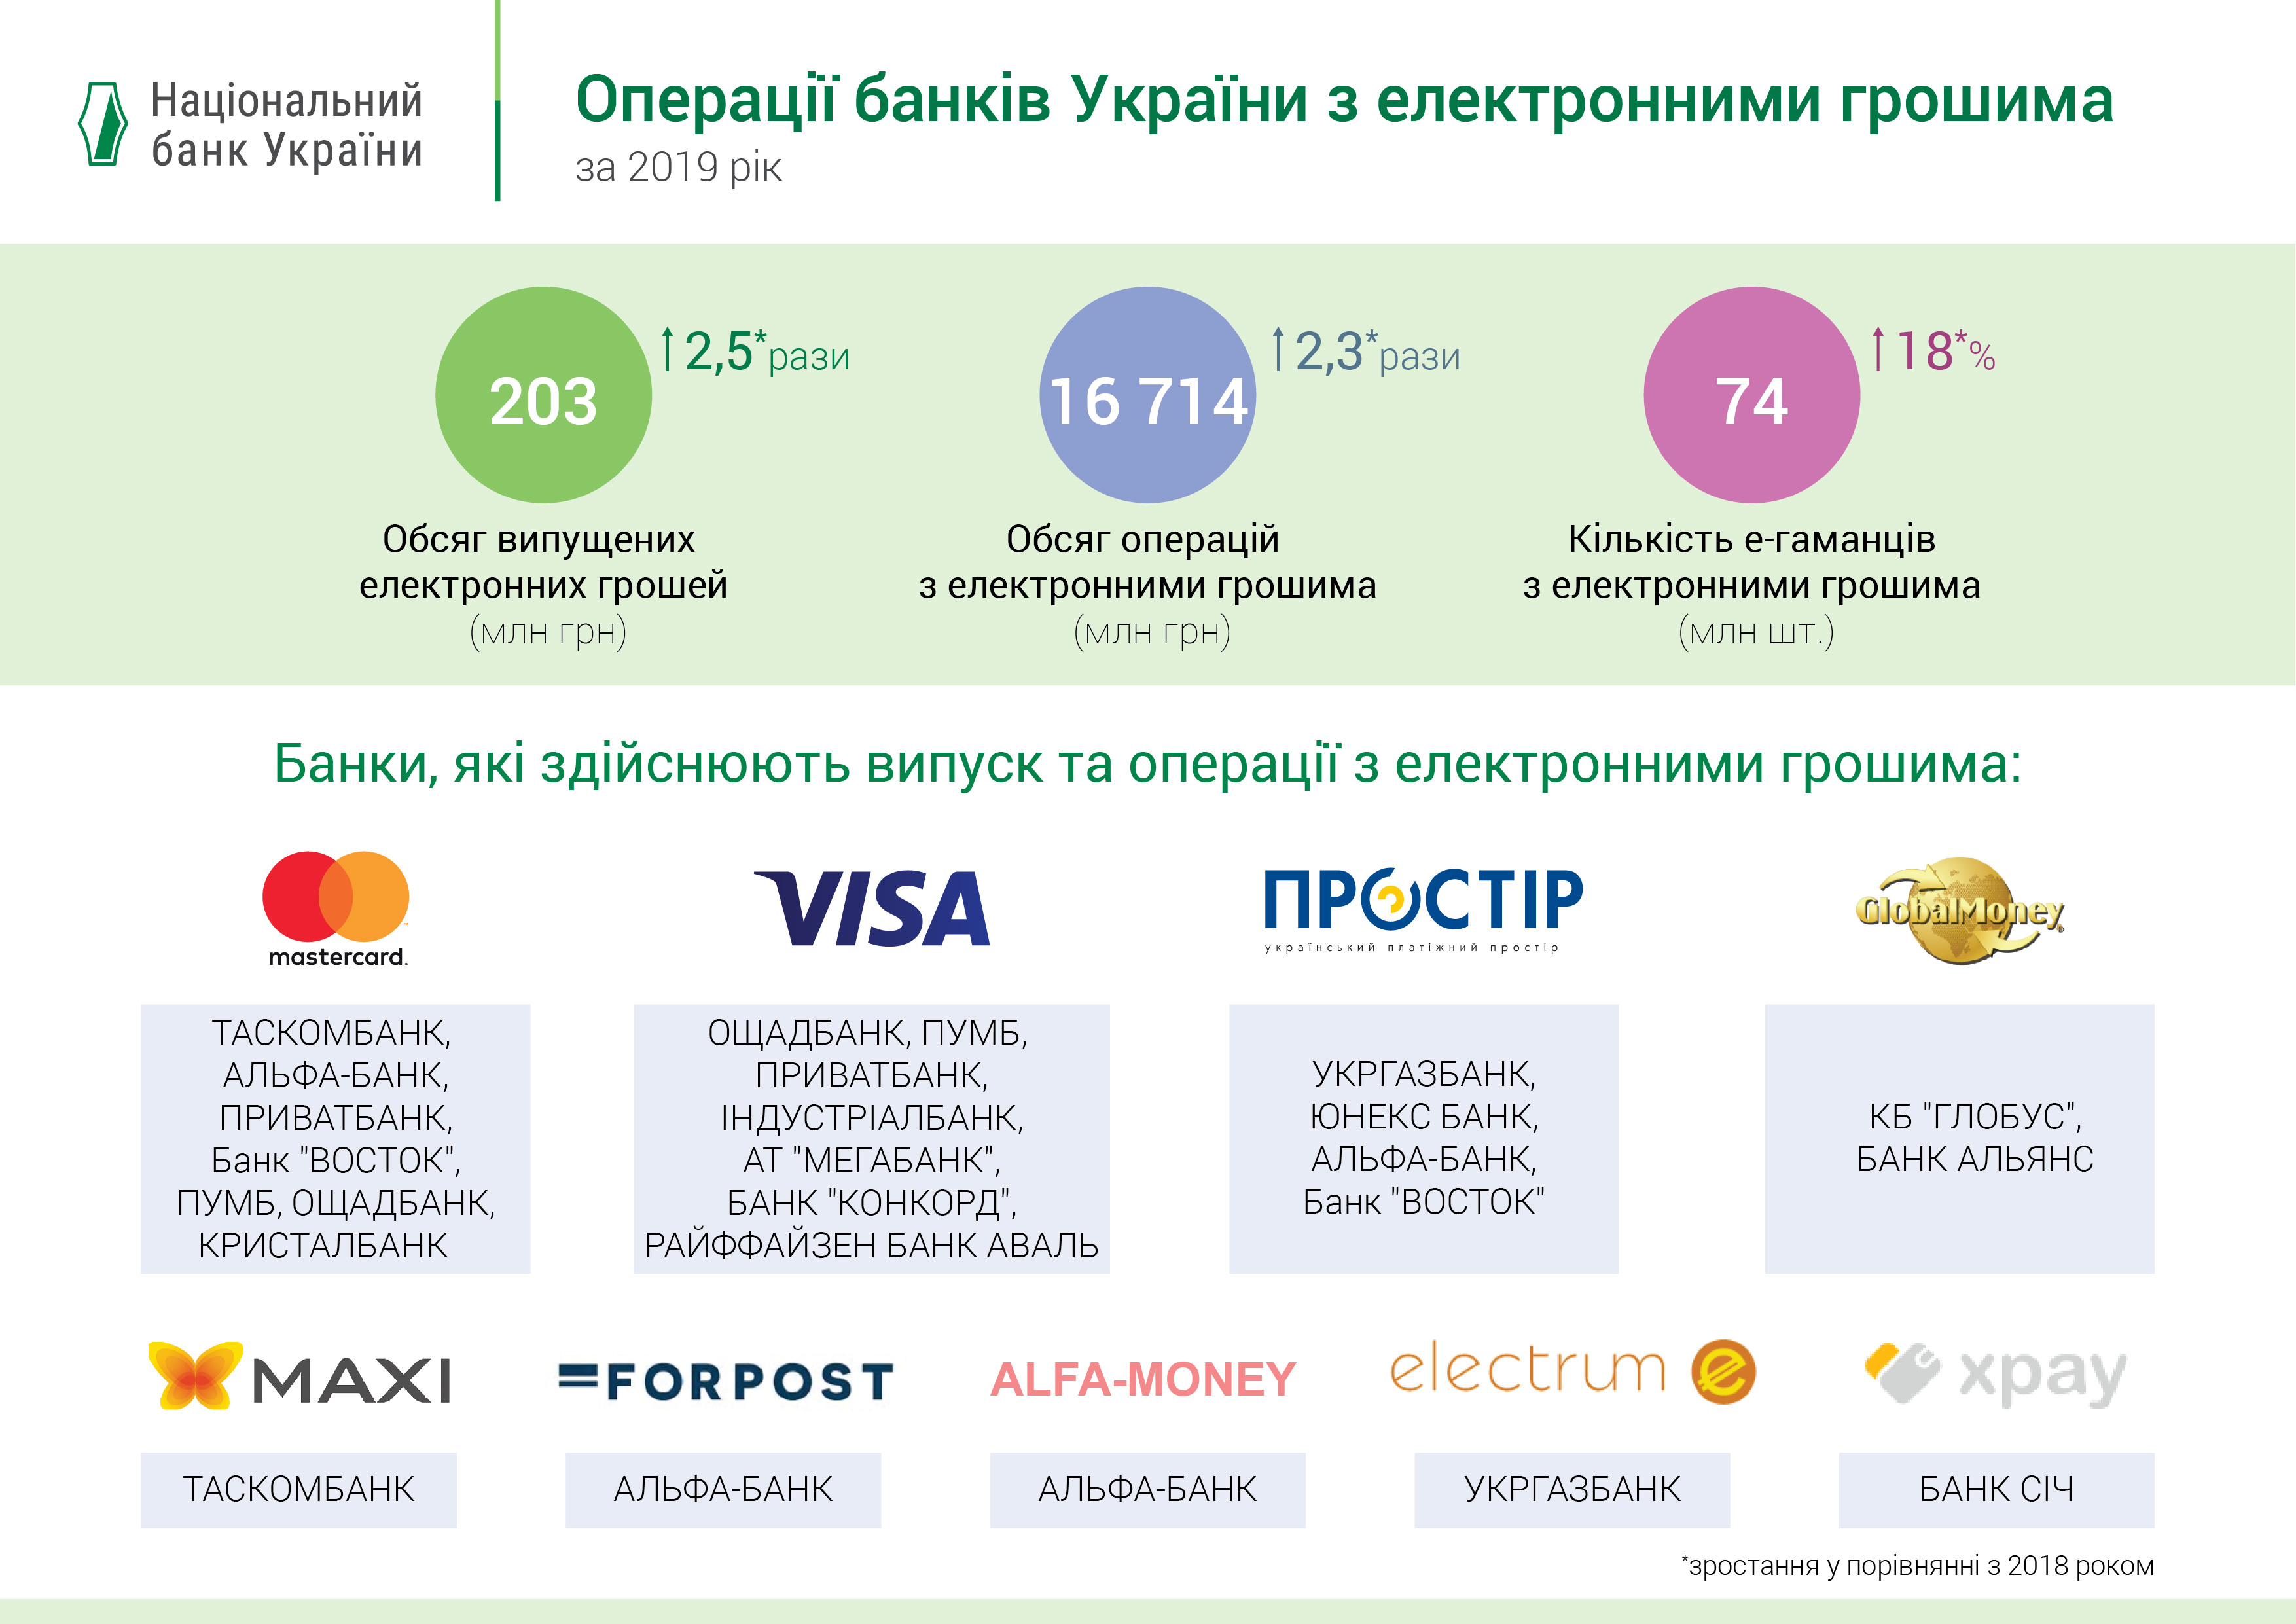 Операції банків України з електронними грошима, І півріччя 2019 року